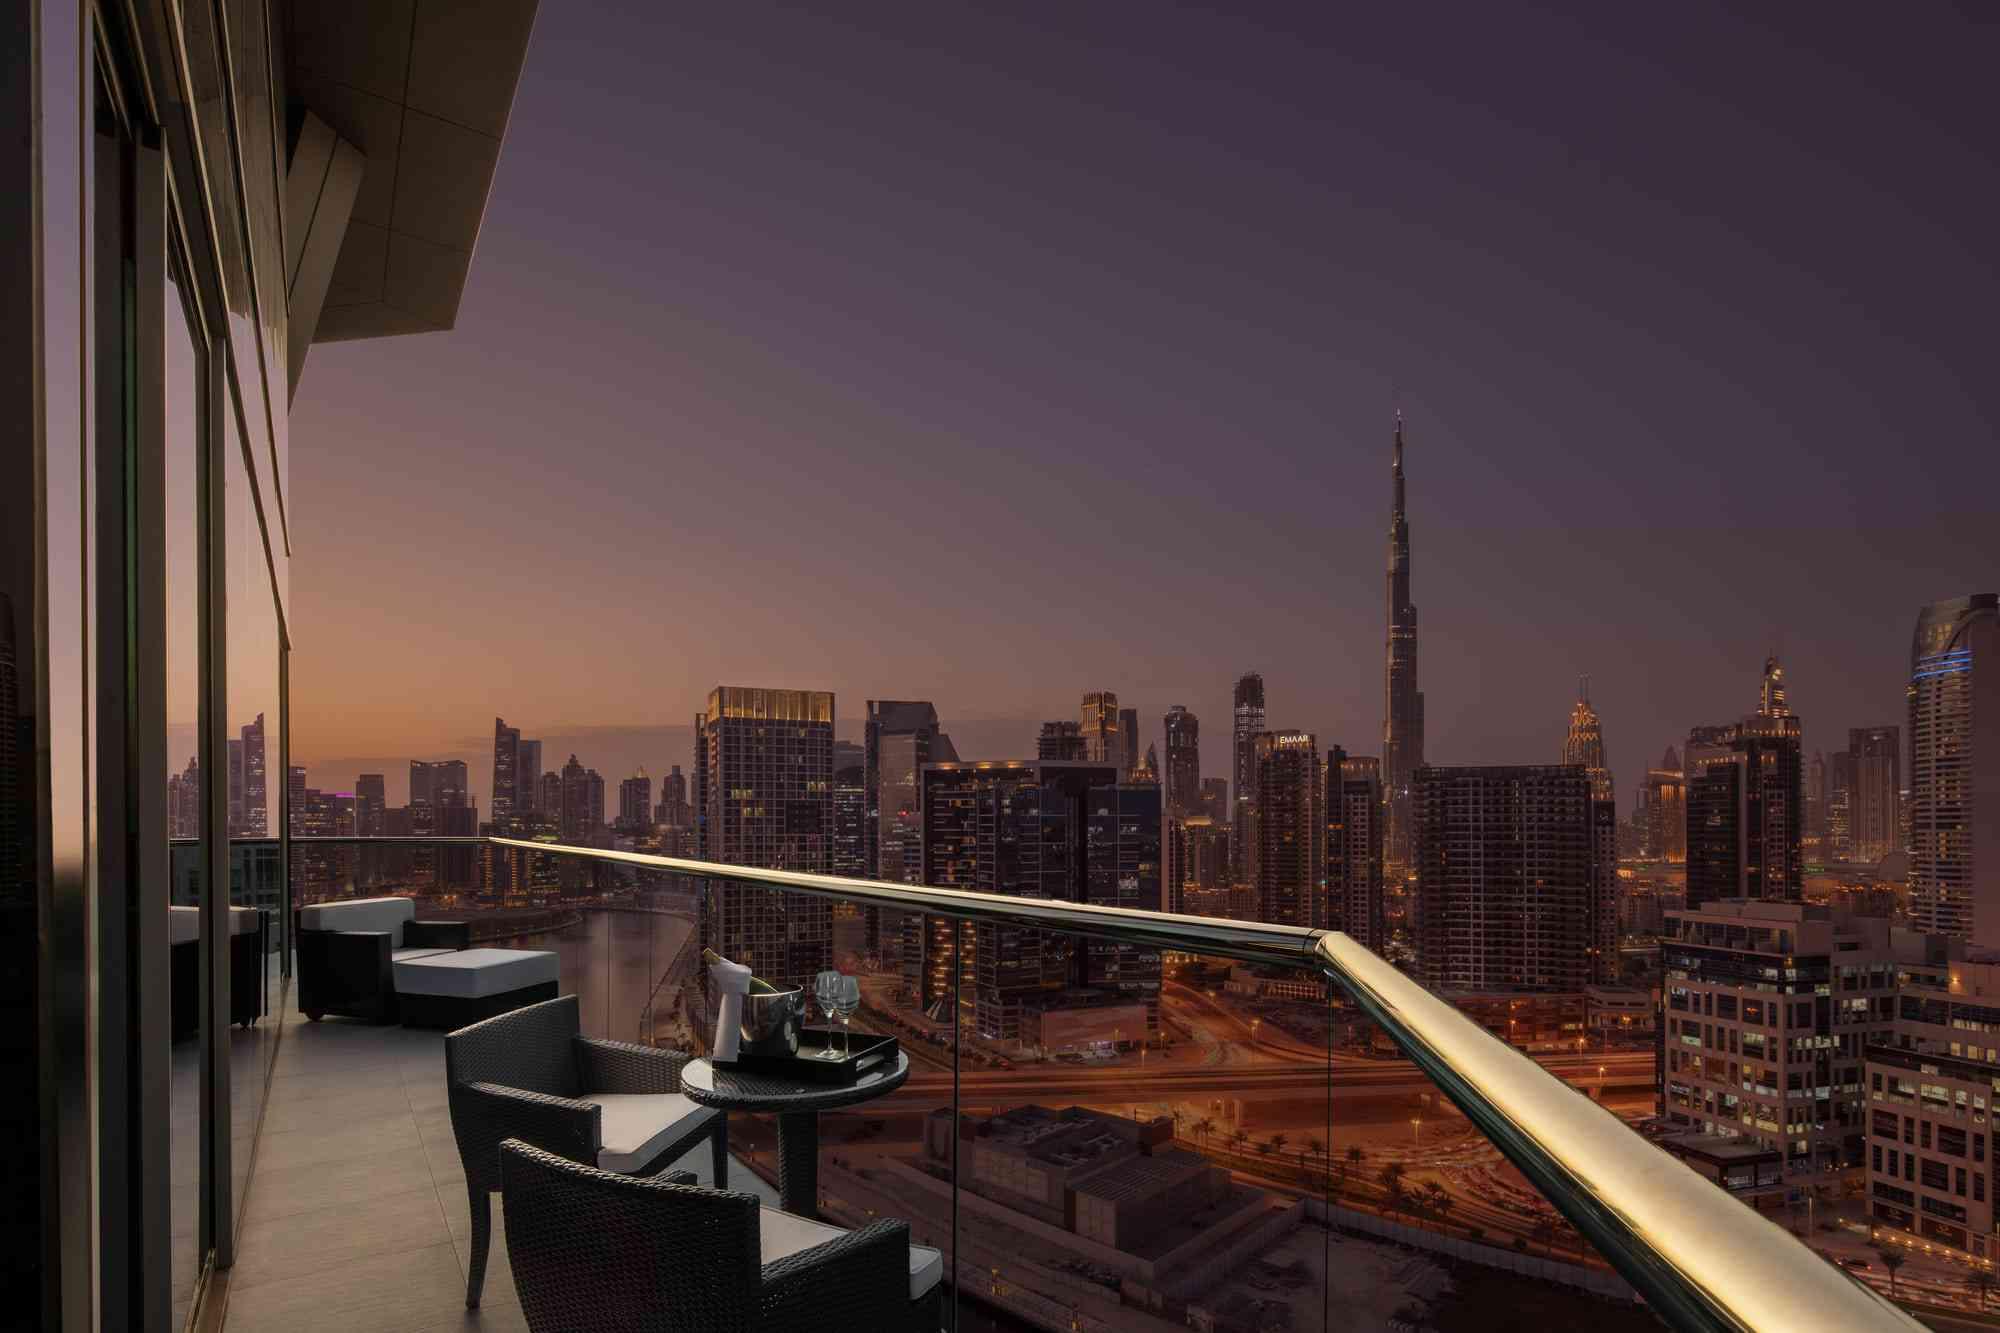 Balcony looking out at Dubai at night.